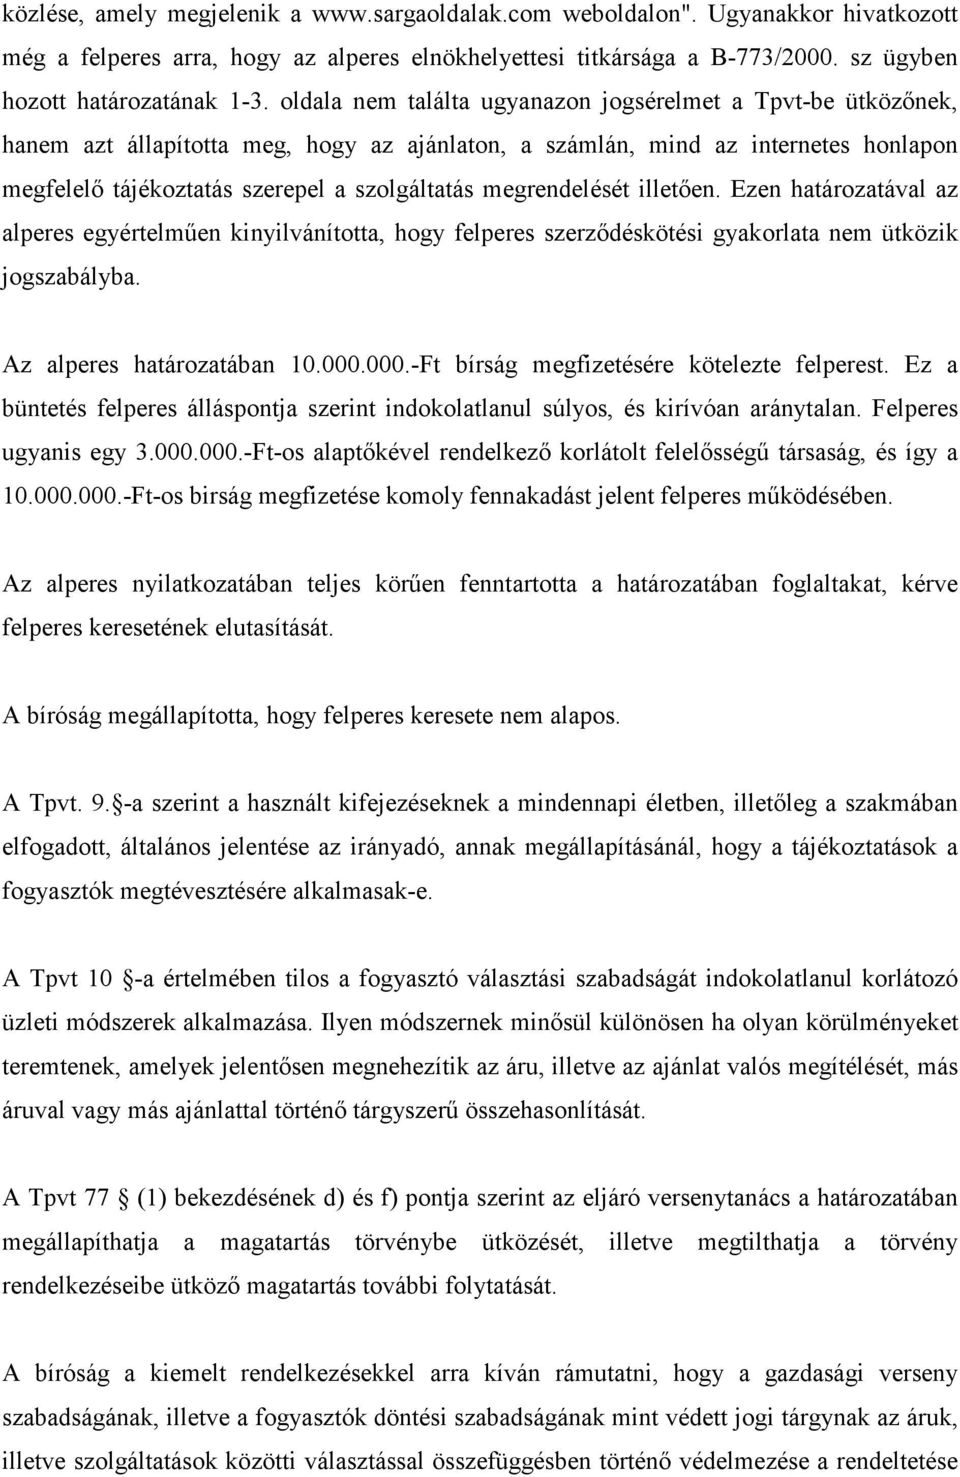 megrendelését illetıen. Ezen határozatával az alperes egyértelmően kinyilvánította, hogy felperes szerzıdéskötési gyakorlata nem ütközik jogszabályba. Az alperes határozatában 10.000.